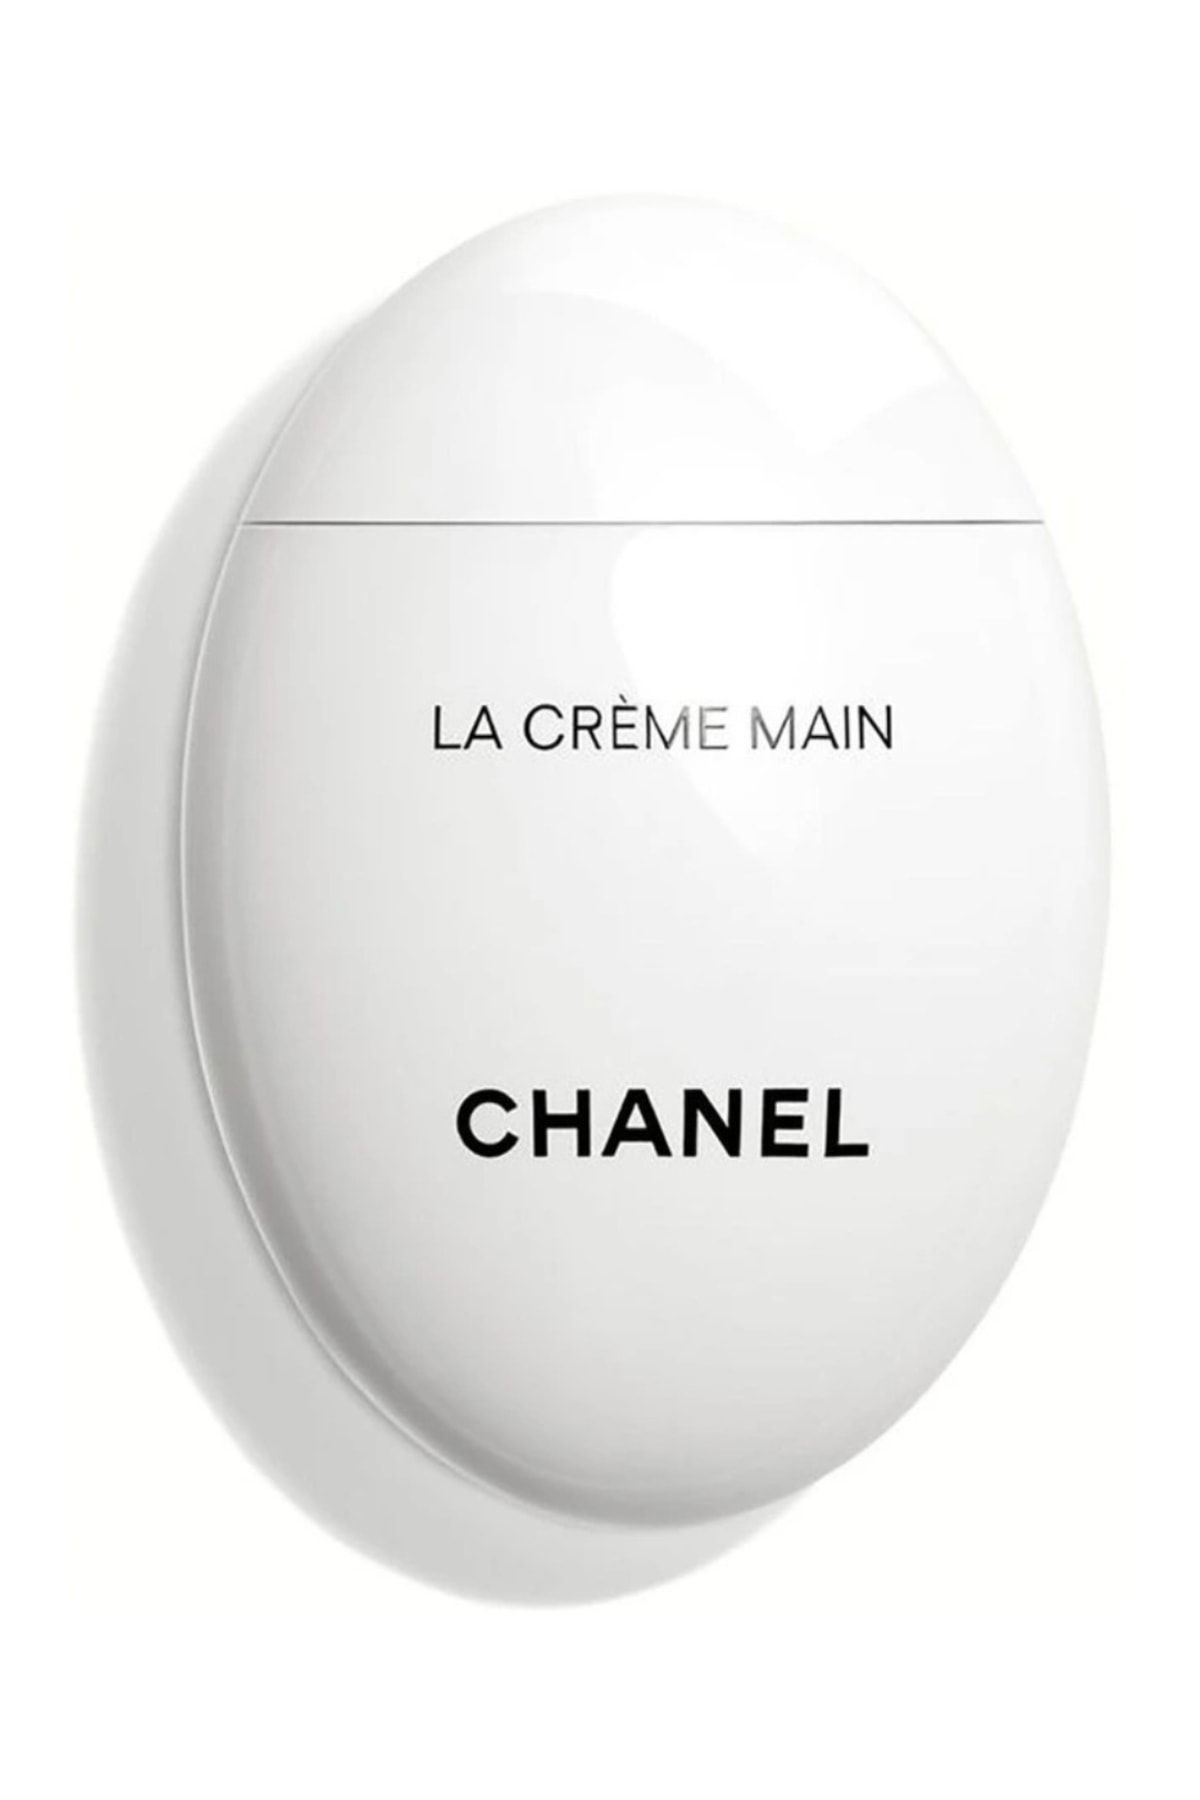 Chanel La Crème Main 50 Ml